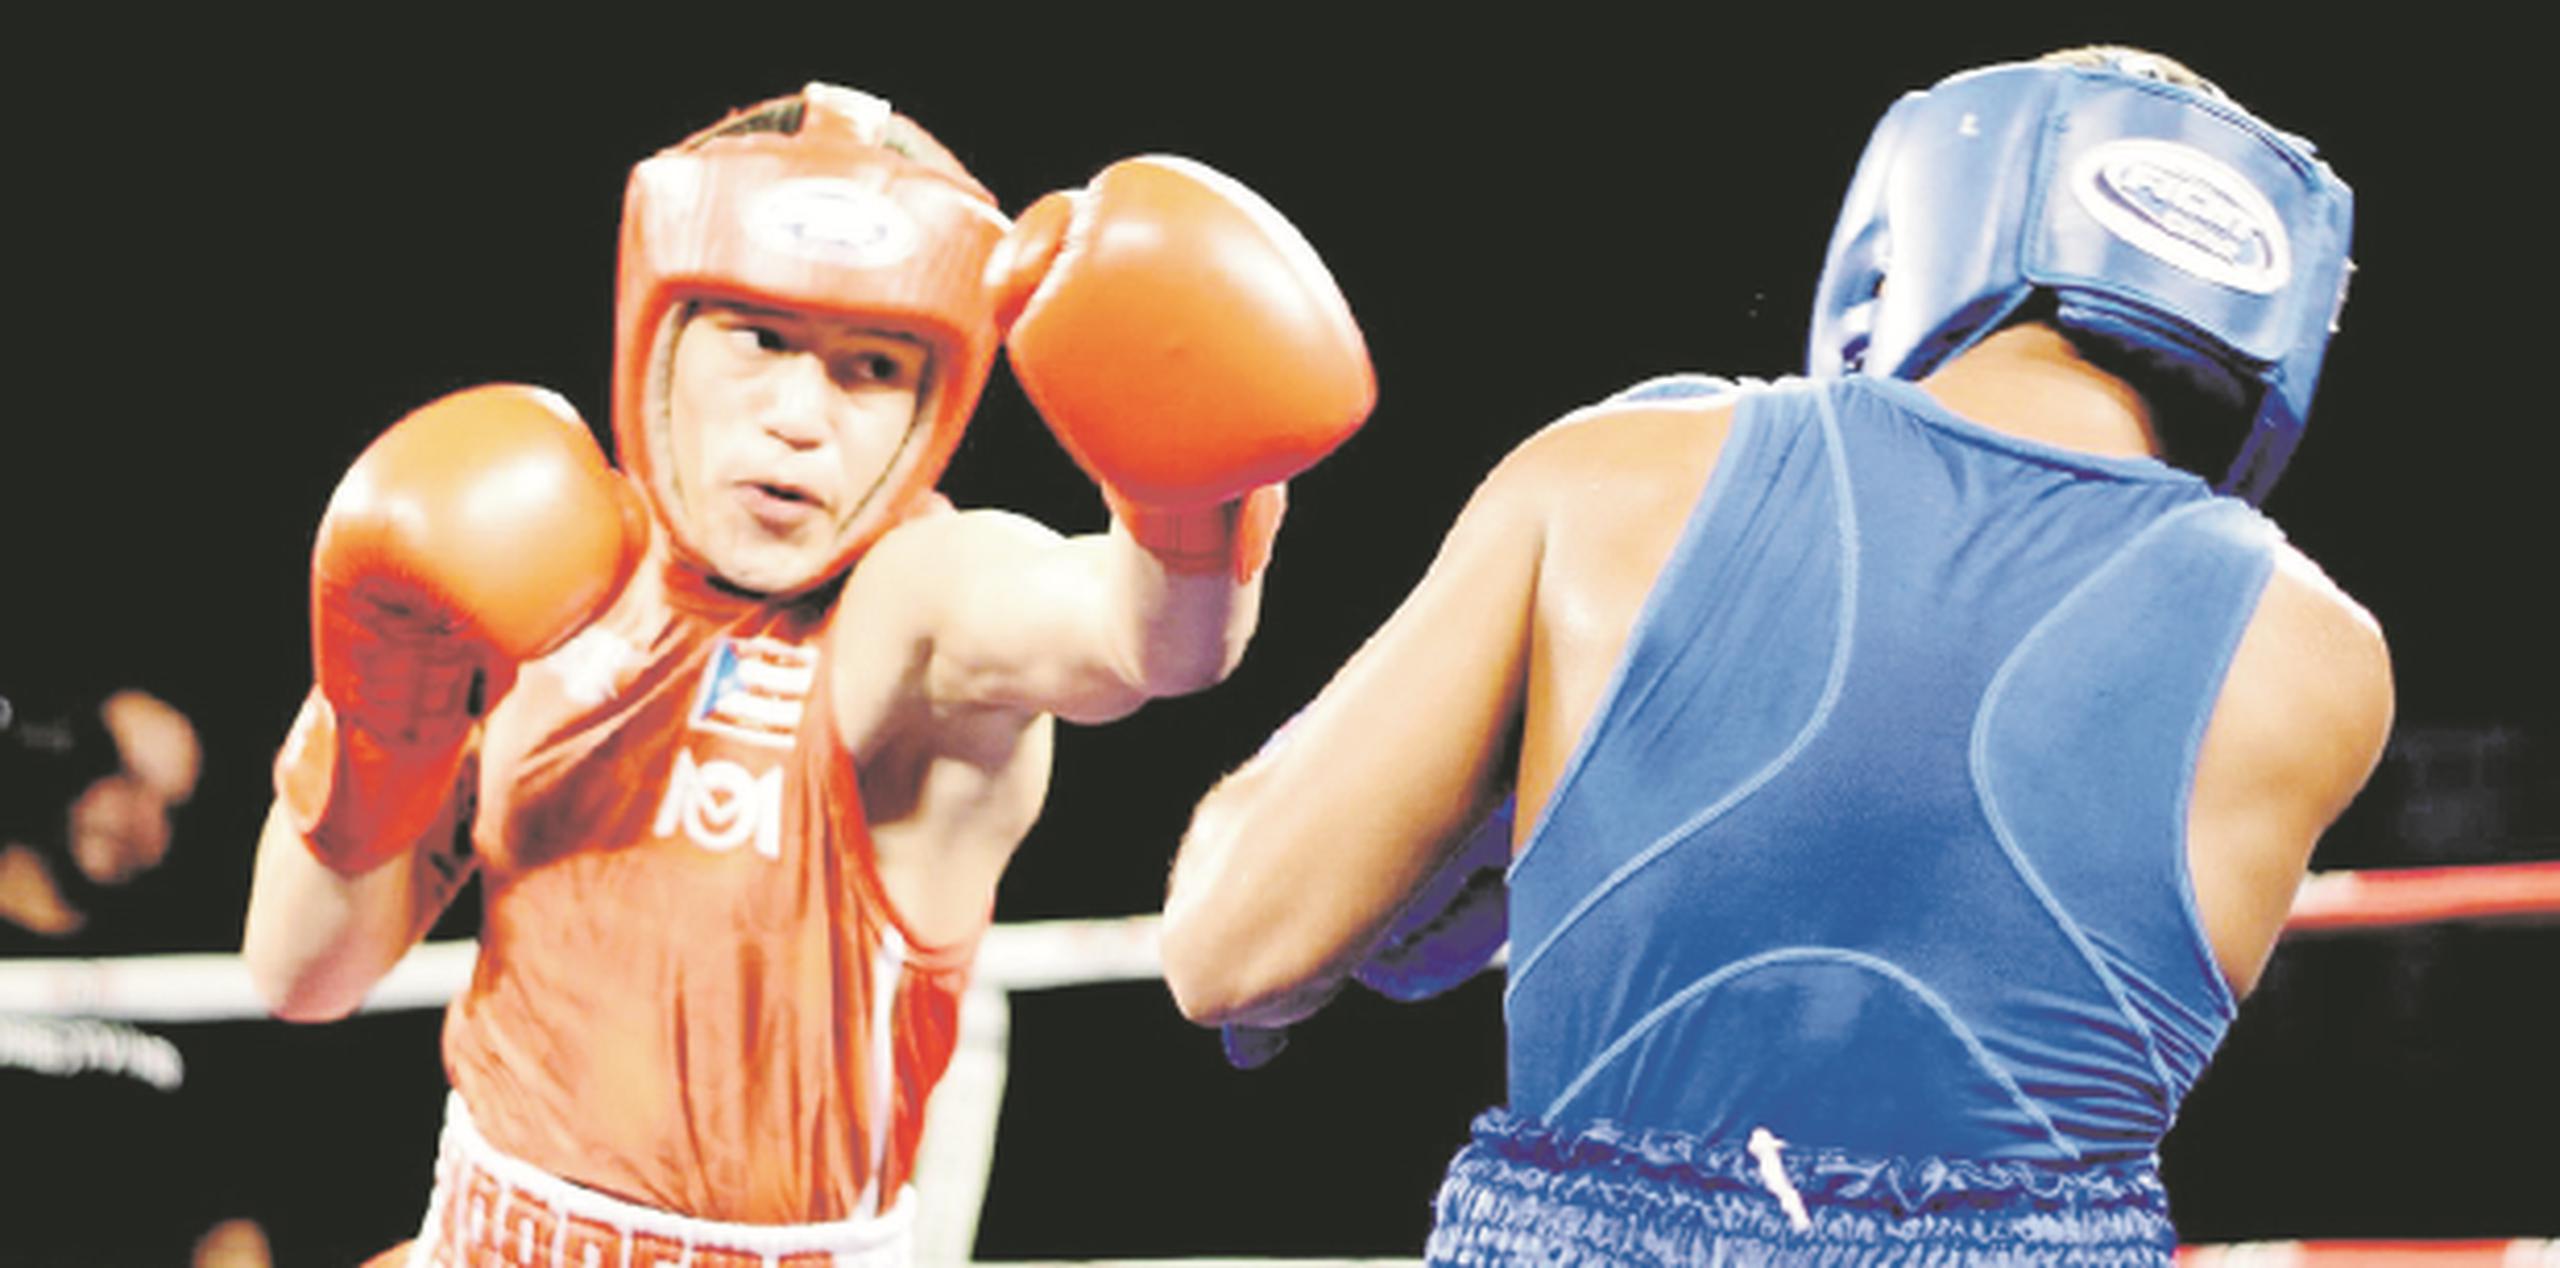 El joven luquillense se medirá a John Ortiz, un boxeador de Río Grande, el sábado, 5 de agosto, en el Coliseo Municipal Ecuestre de Fajardo. (SUMINISTRADA)